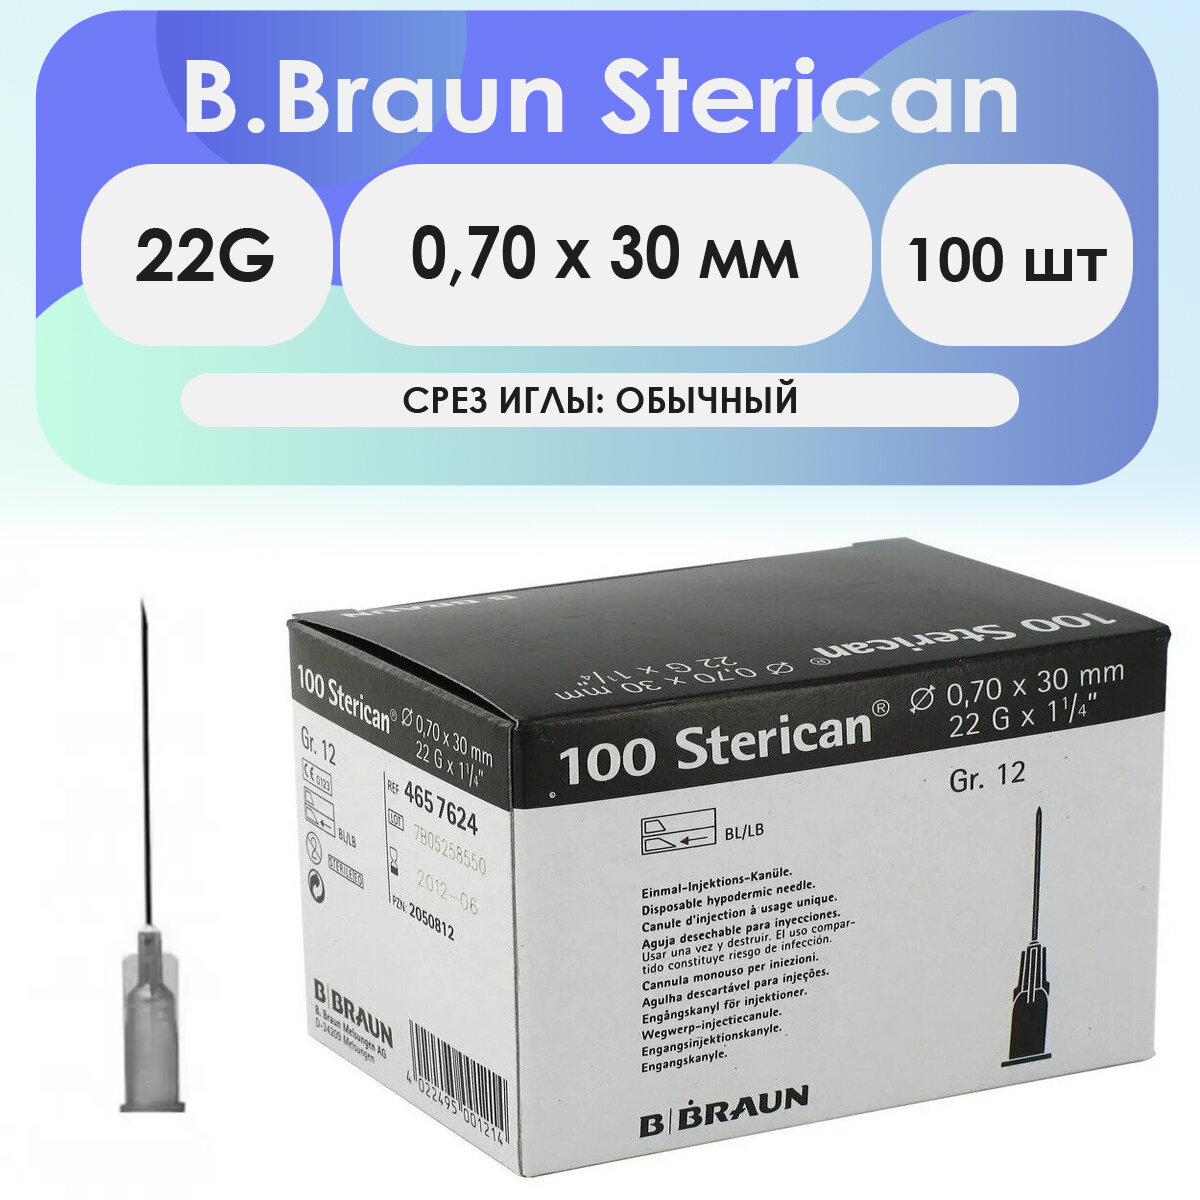 Игла инъекционная B. Braun Sterican 22G (0.70 х 30 мм) - 100 шт